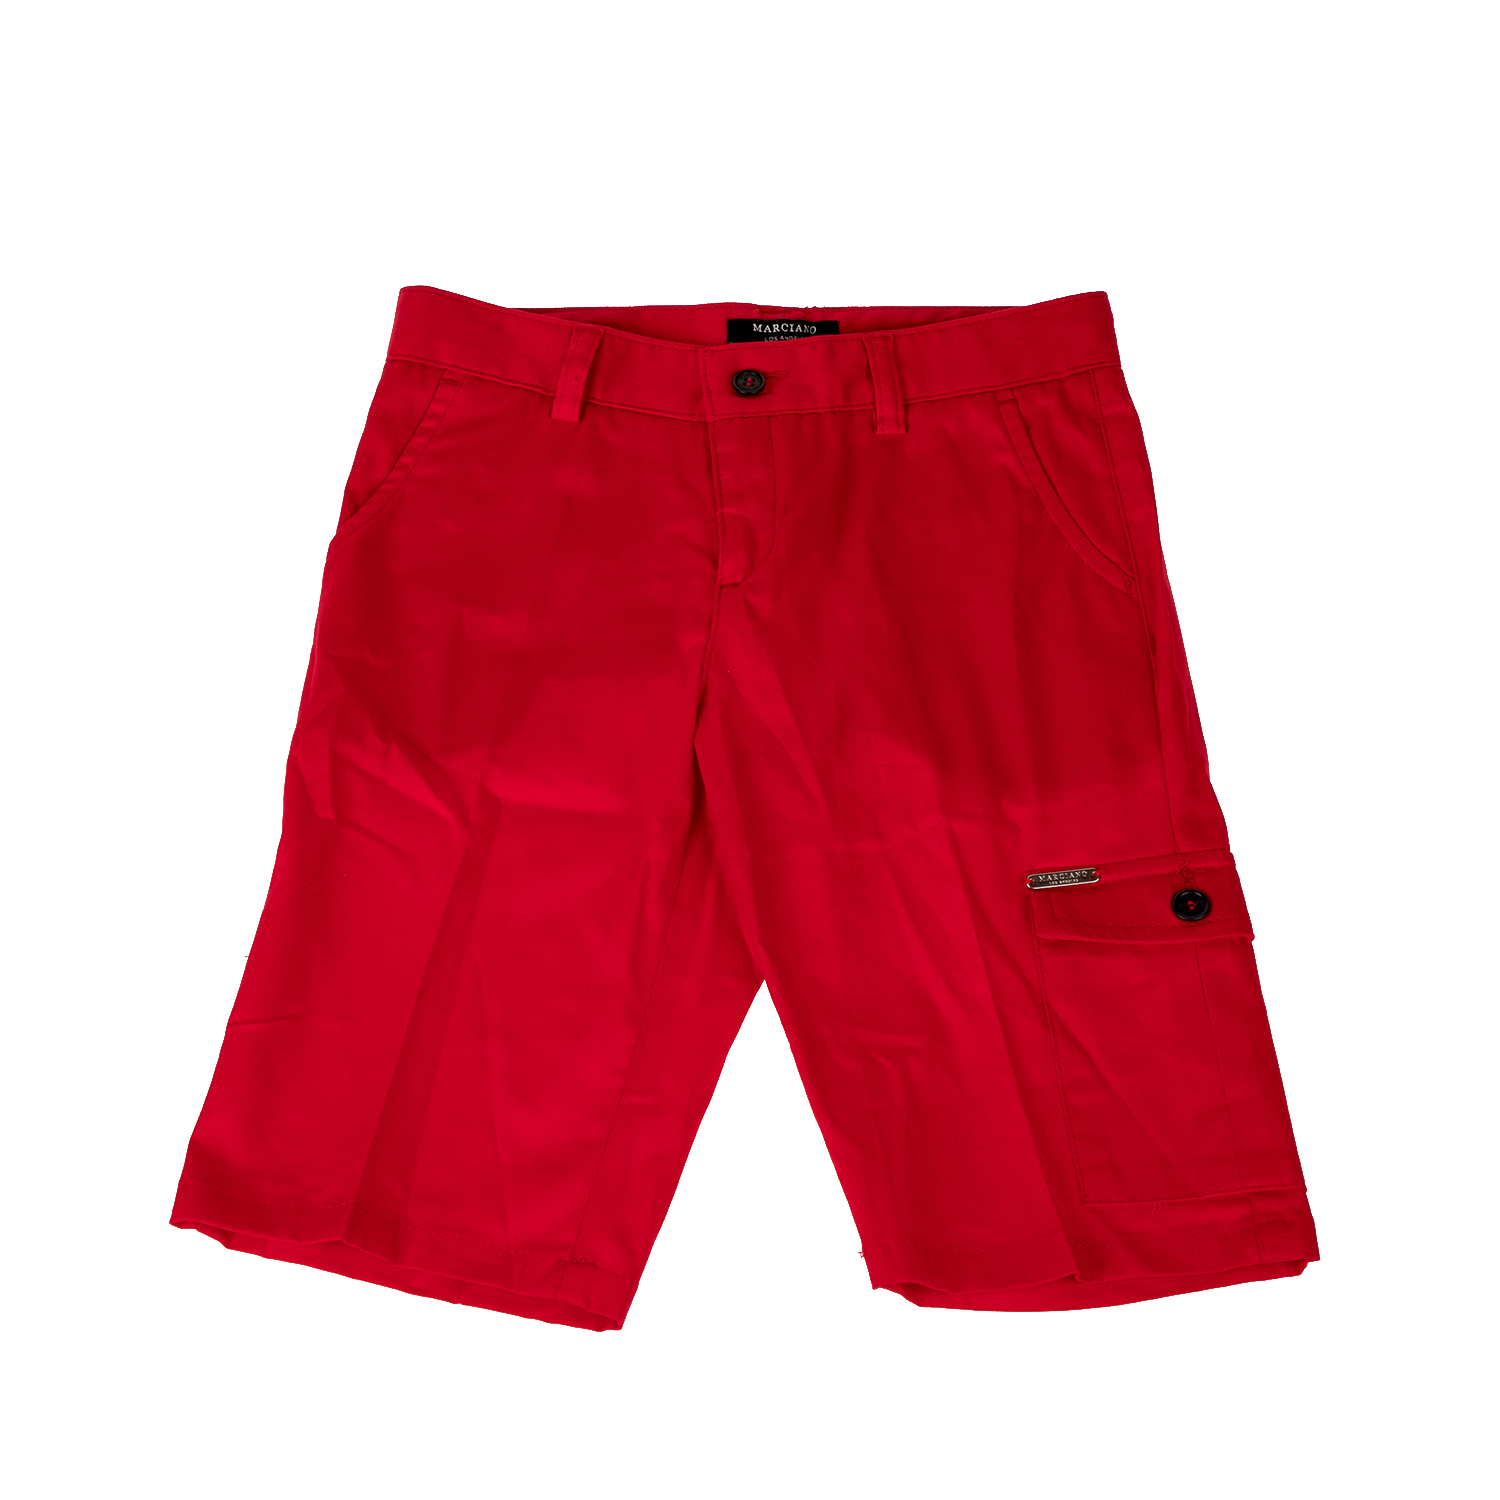 Παιδικά/Boys/Ρούχα/Σορτς-Βερμούδες GUESS - Παιδική βερμούδα GUESS κόκκινη